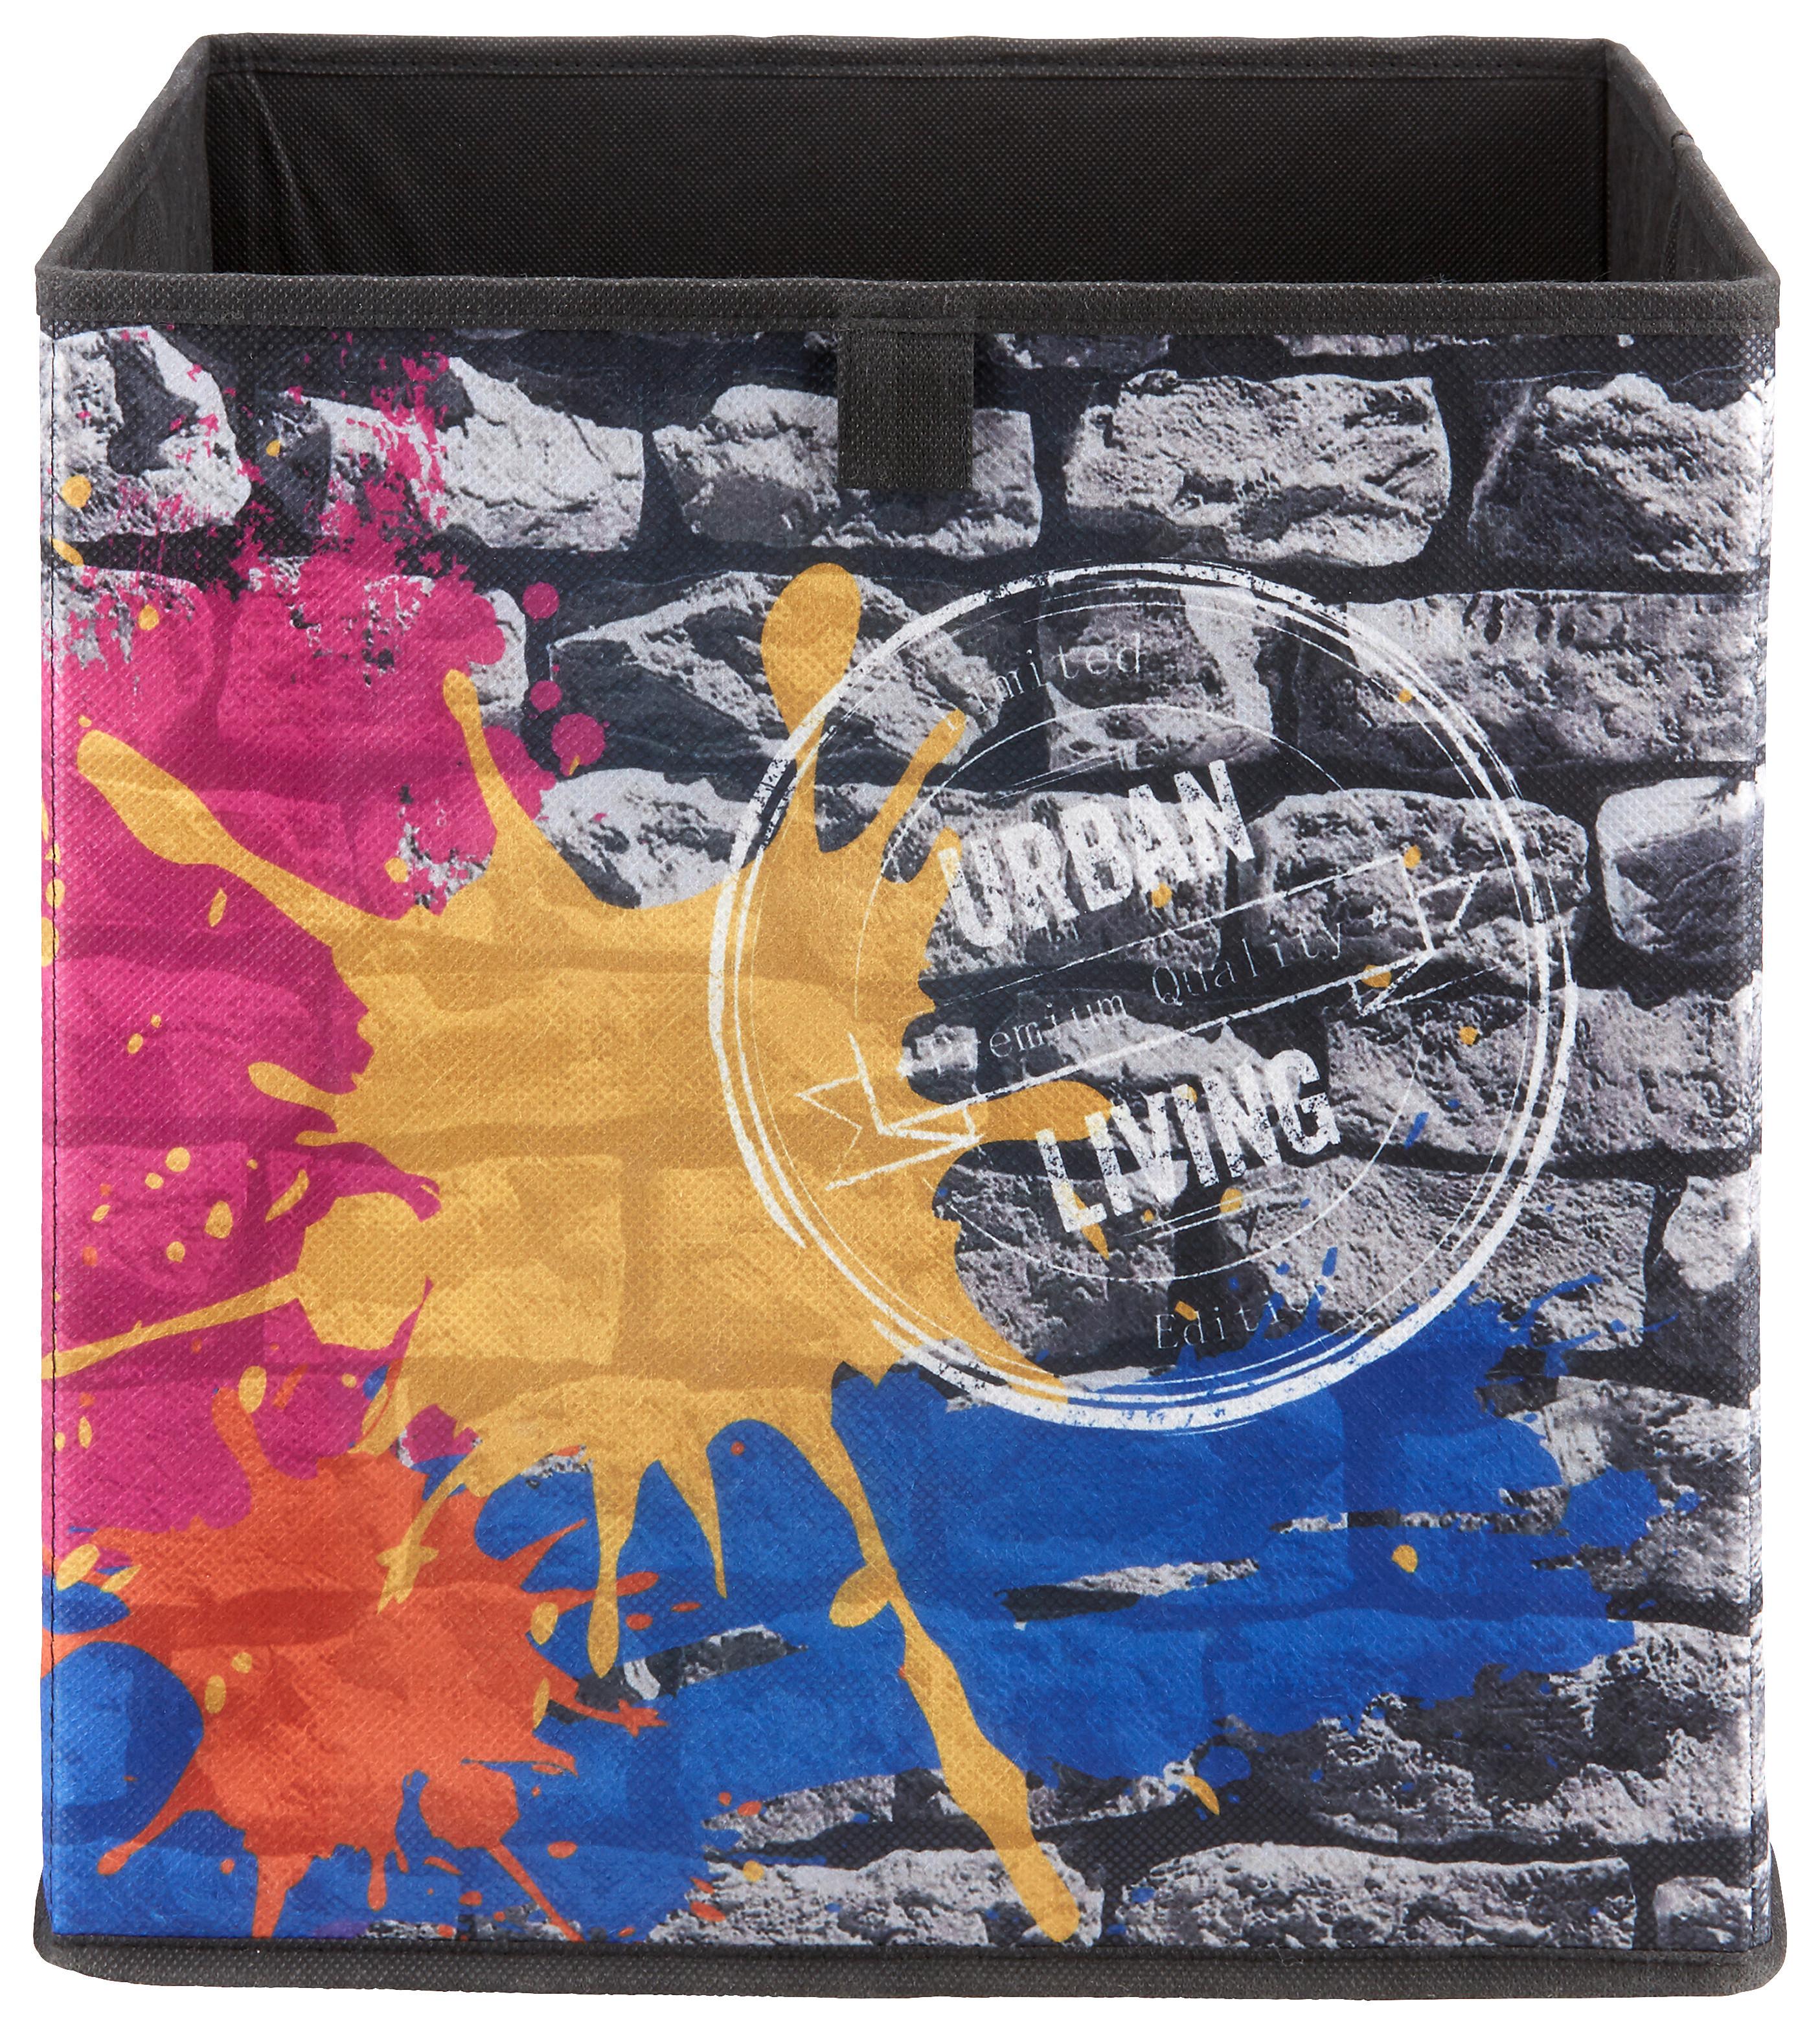 Aufbewahrungsbox Poppi mit Steindesign - Multicolor, Karton/Textil (32/32/32cm) - Based